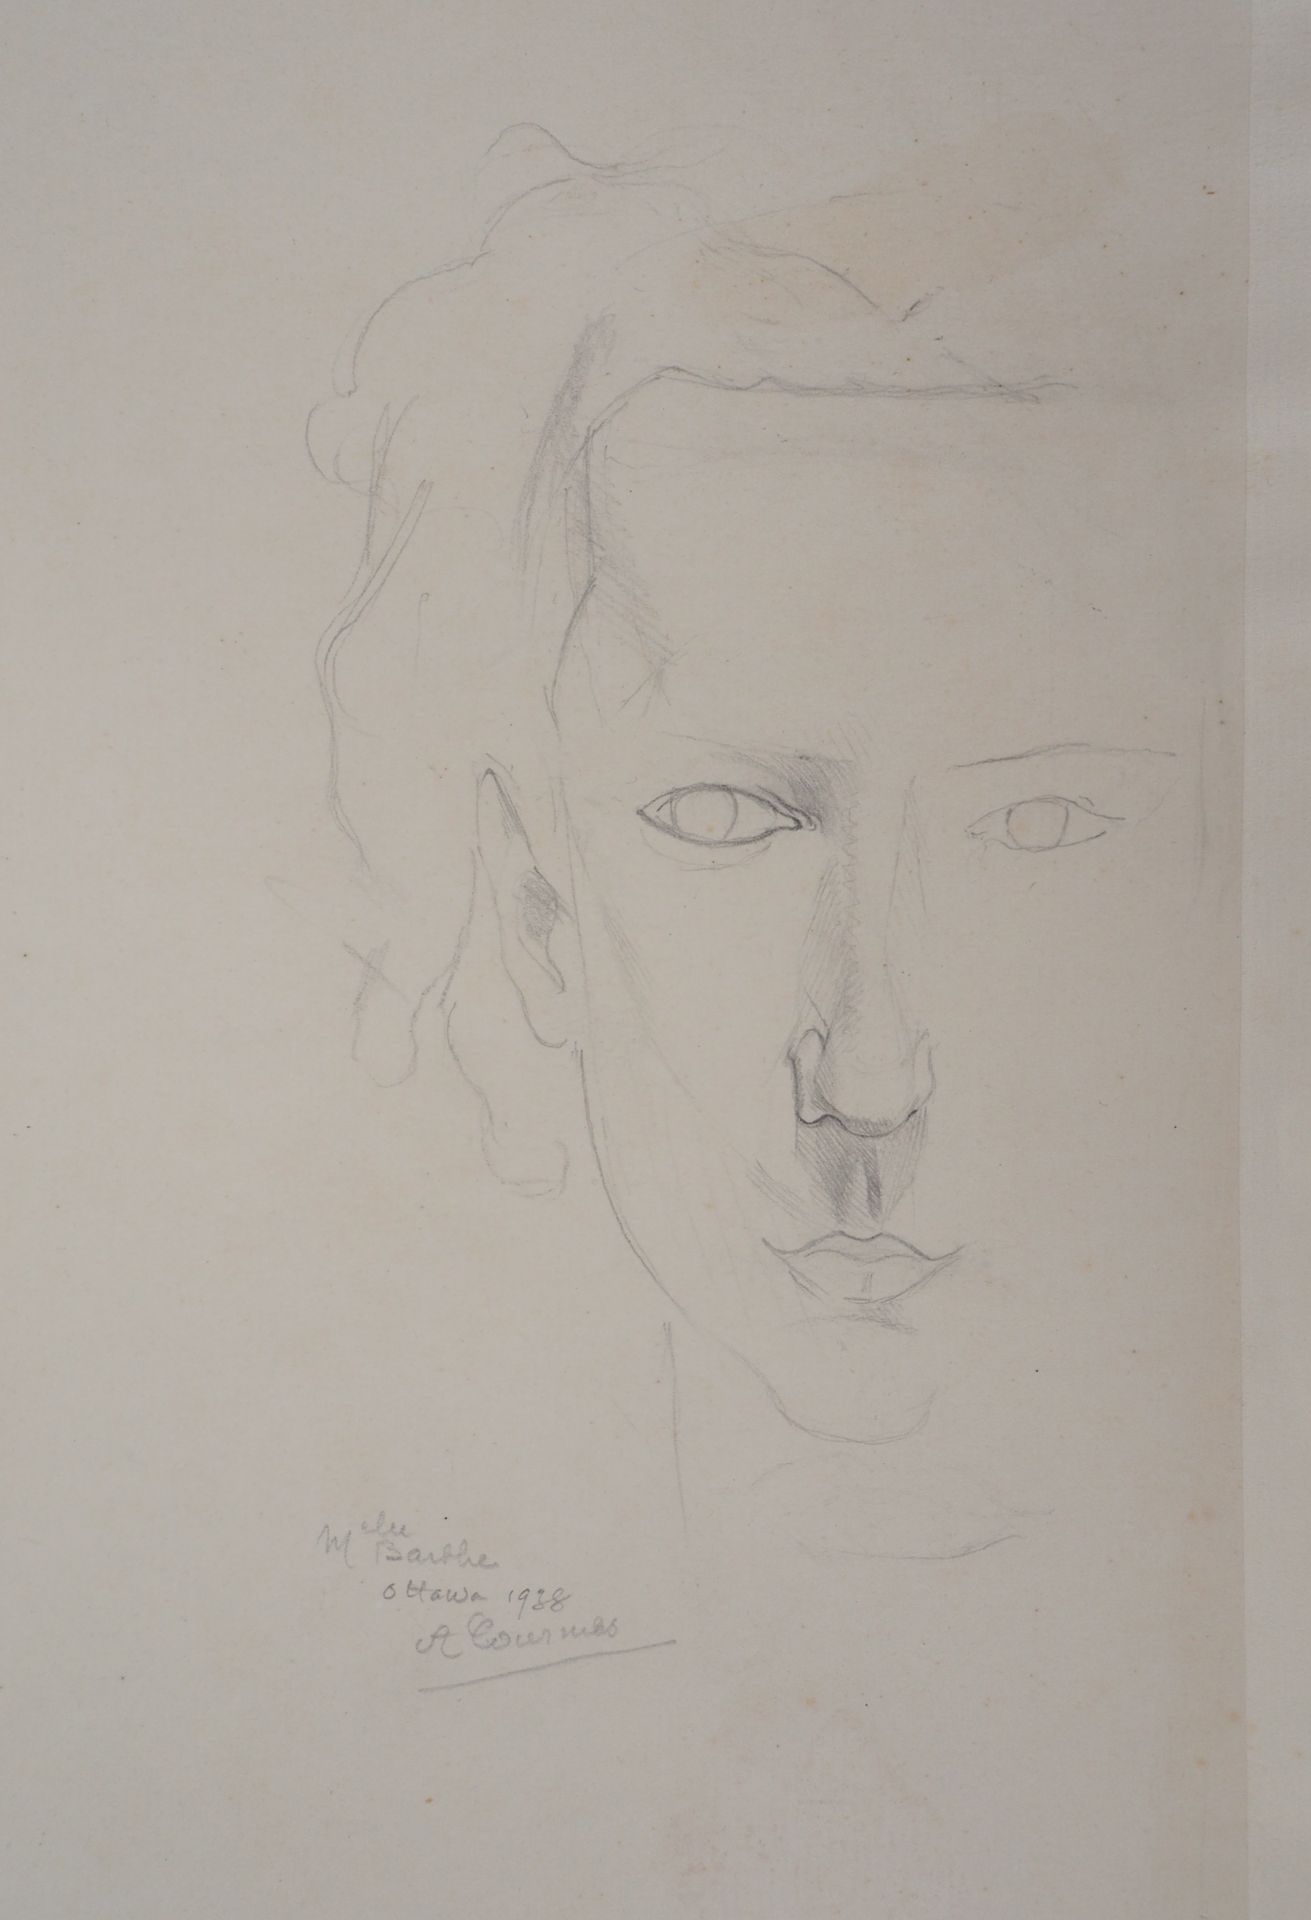 Alfred COURMES Alfred COURMES (1898-1993)

Gesicht einer Frau, 1938

Zeichnung m&hellip;